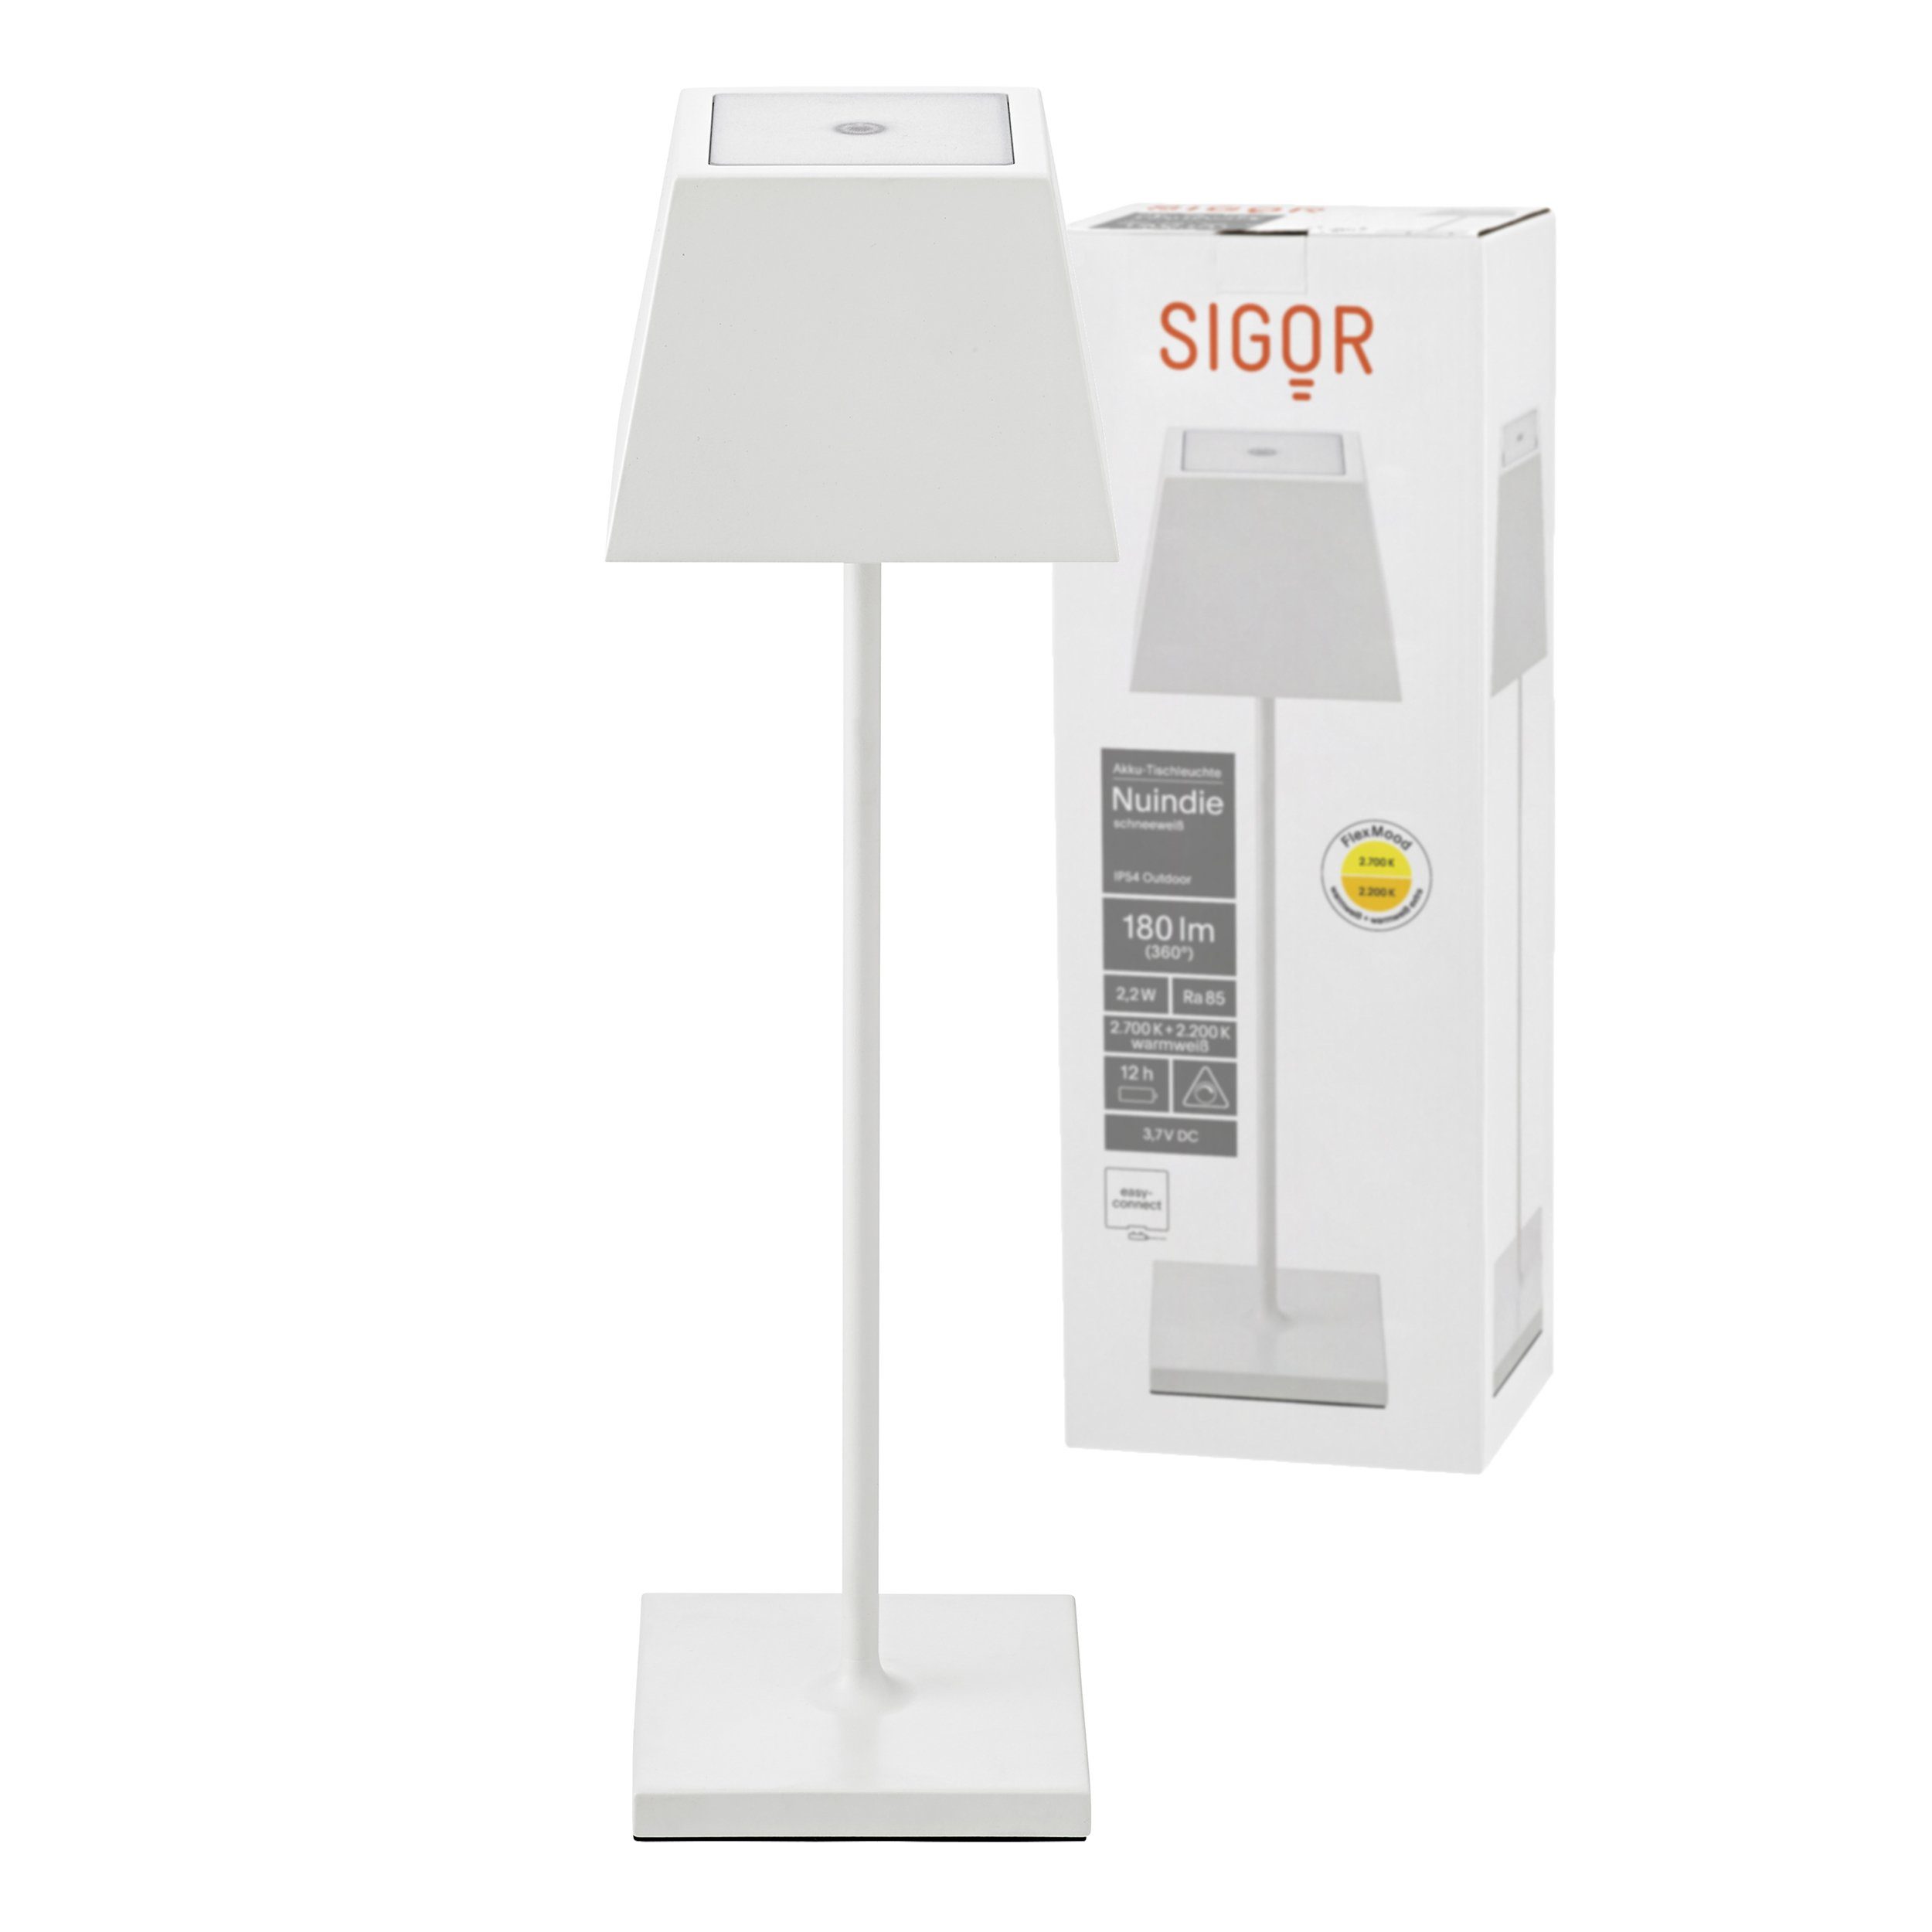 SIGOR LED 2700 Platine, 1 eckig, Dimmbar, Kelvin Schneeweiß LED NUINDIE Tischleuchte Tischleuchte